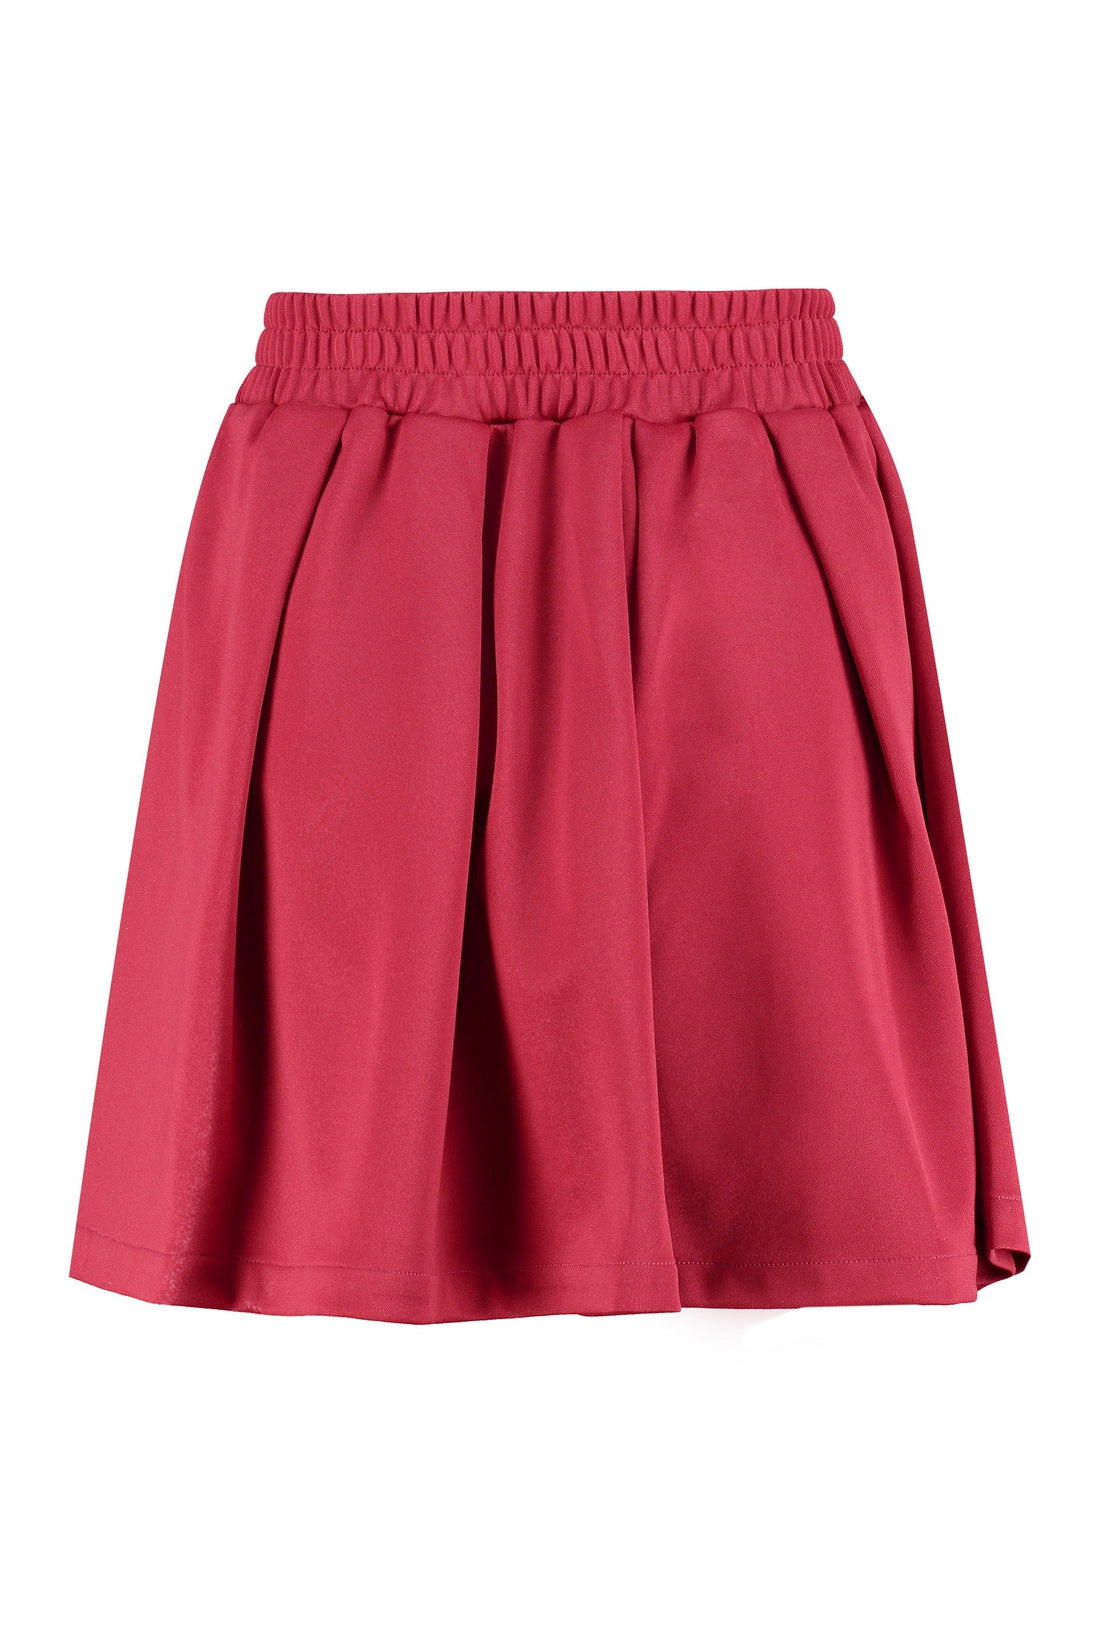 GCDS-OUTLET-SALE-Wrap mini skirt-ARCHIVIST